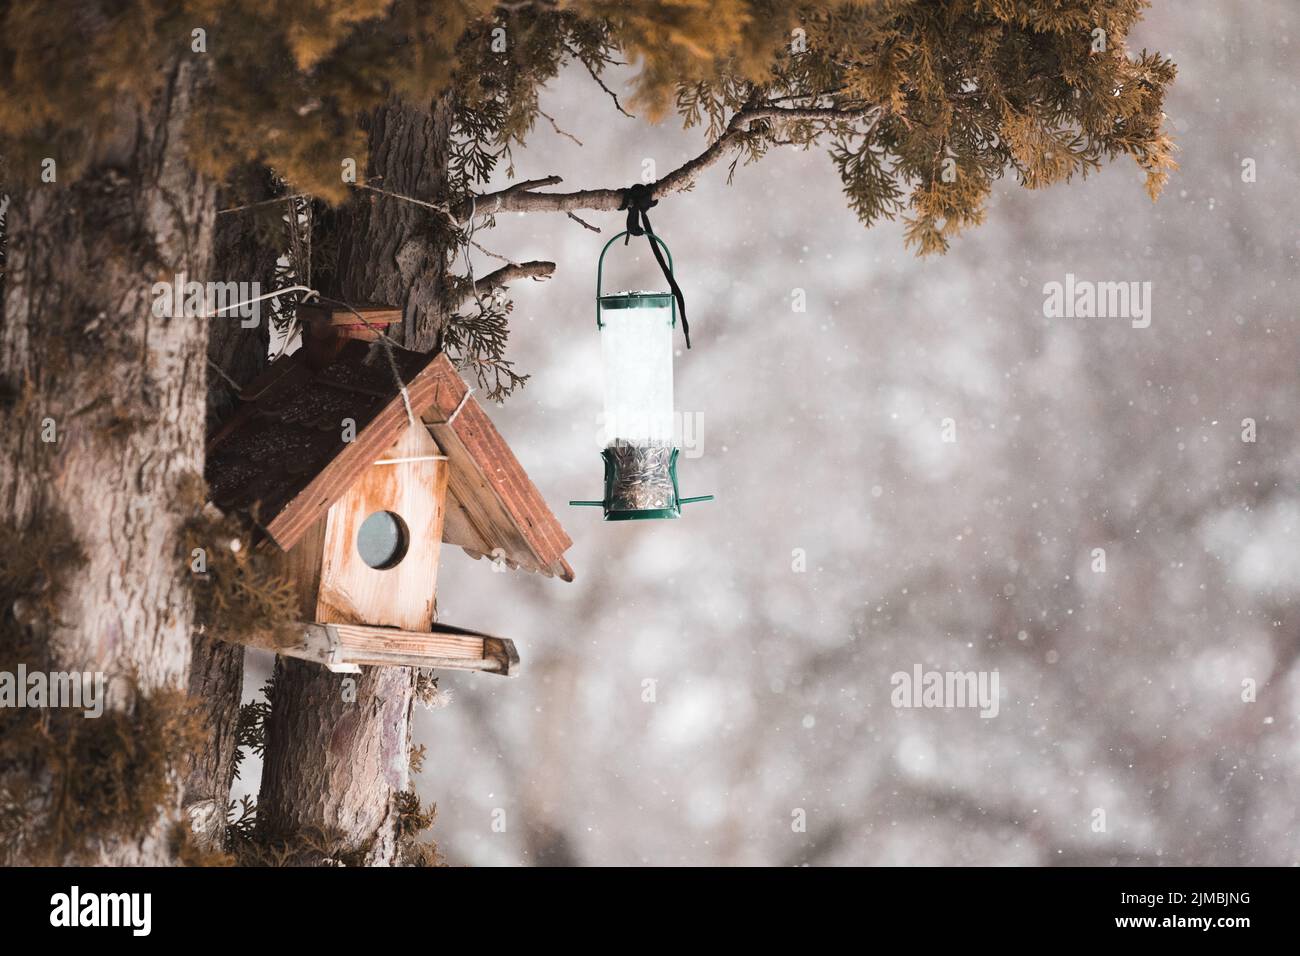 Winterlandschaft mit Schnee und Vögel. Friedlich und ruhig, verschneiten Winter Foto des Hauses Spatzen im Vogelhaus. Stockfoto